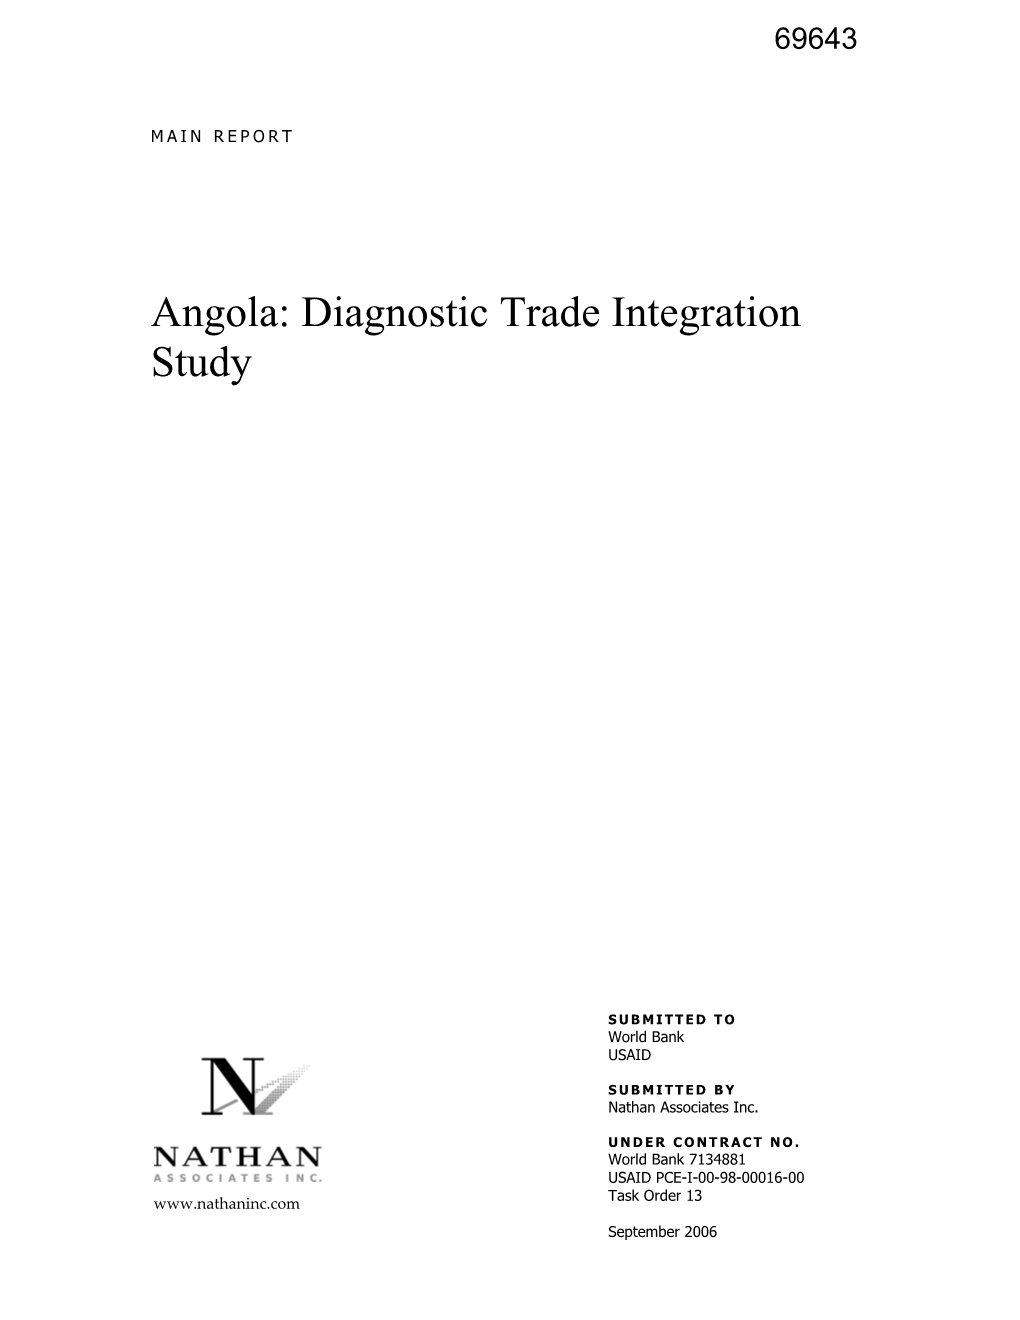 Angola: Diagnostic Trade Integration Study